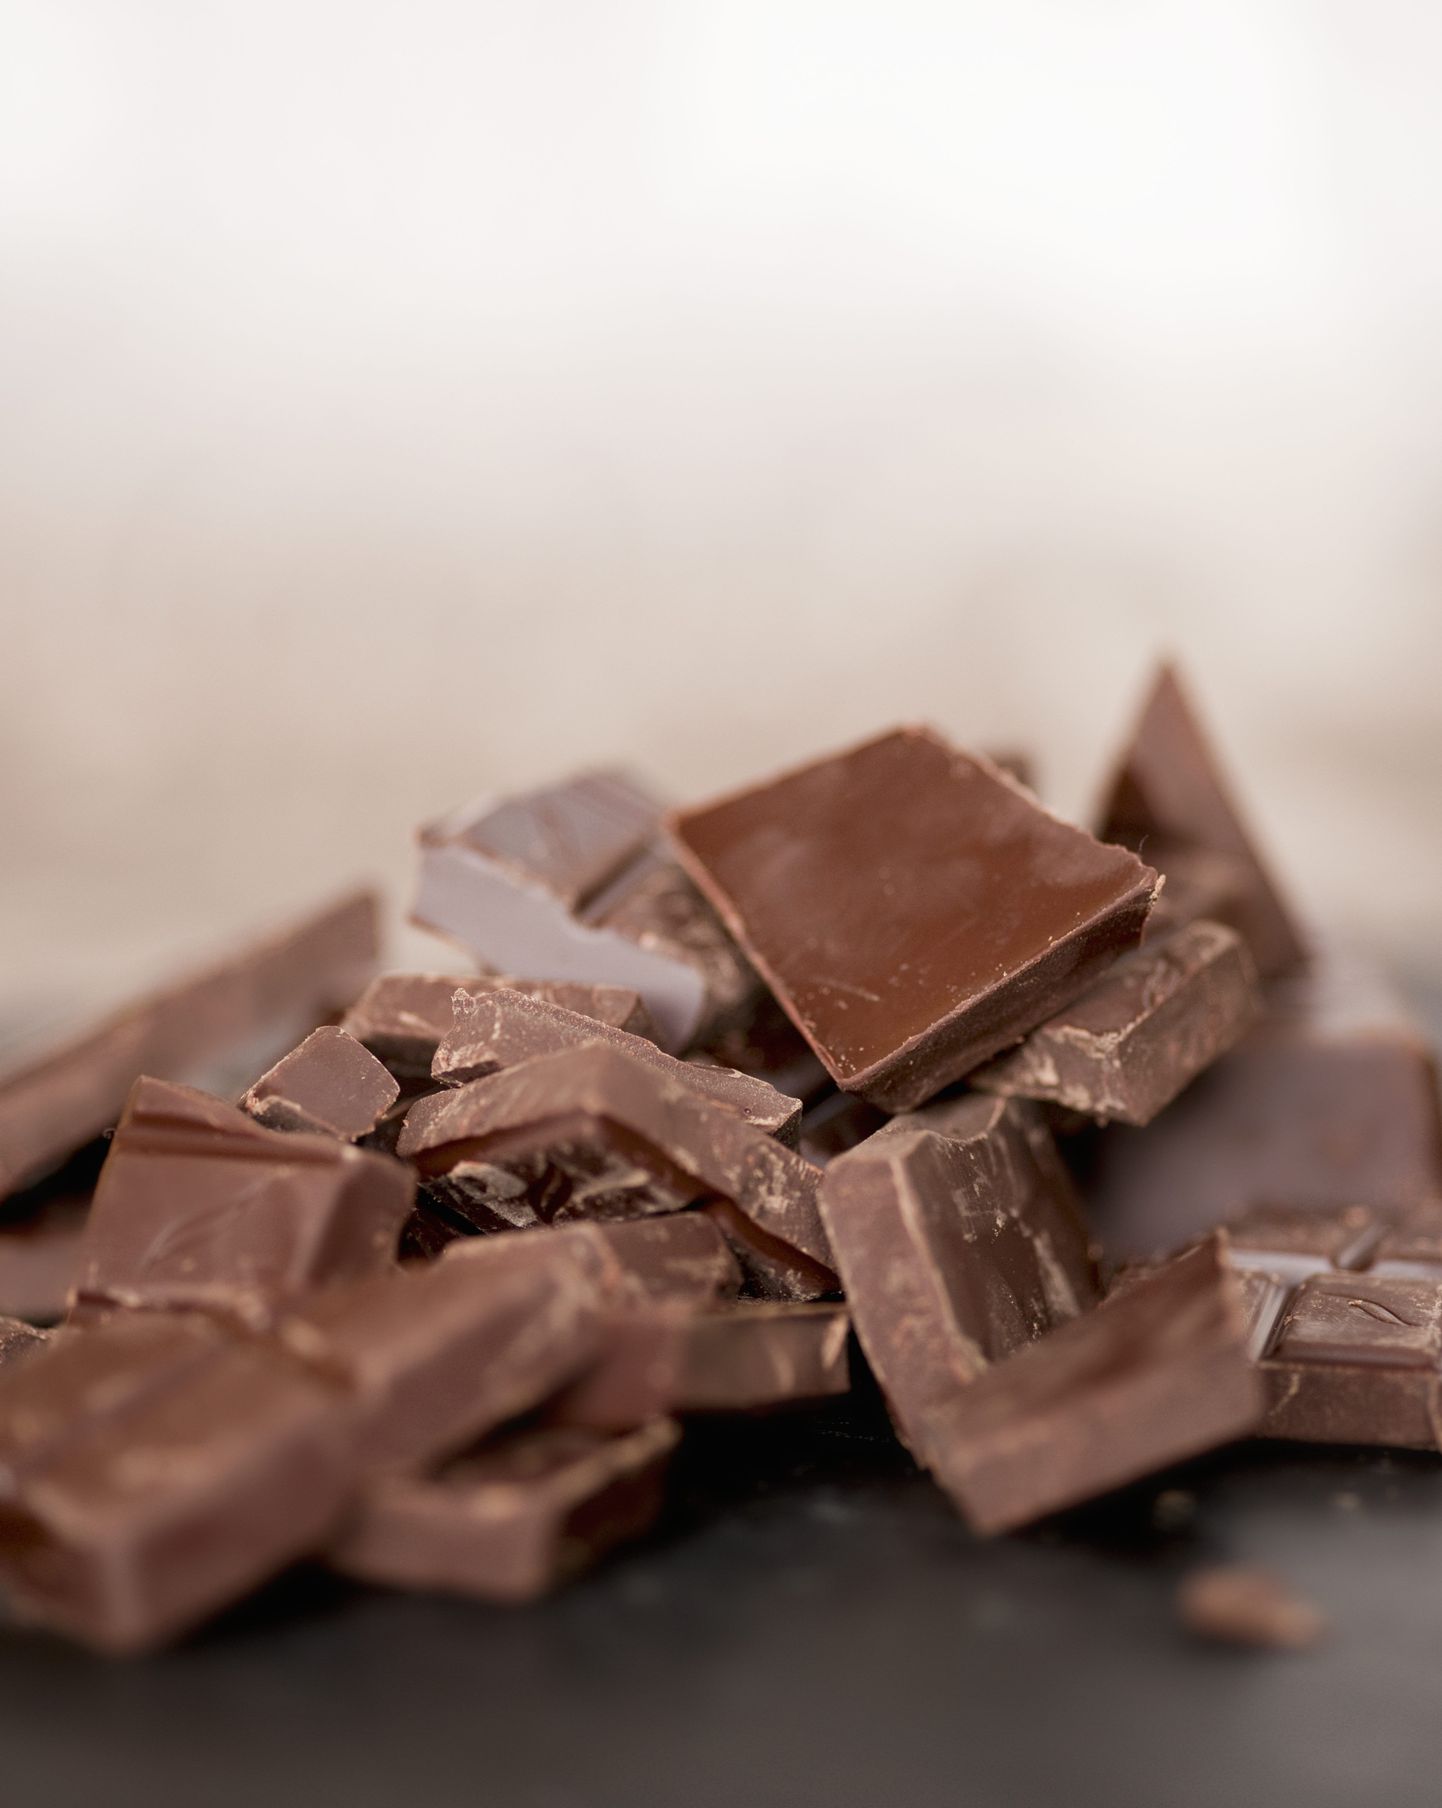 Šokolaadi võib süüa küll, kuid paari tükiga tuleks piirduda.